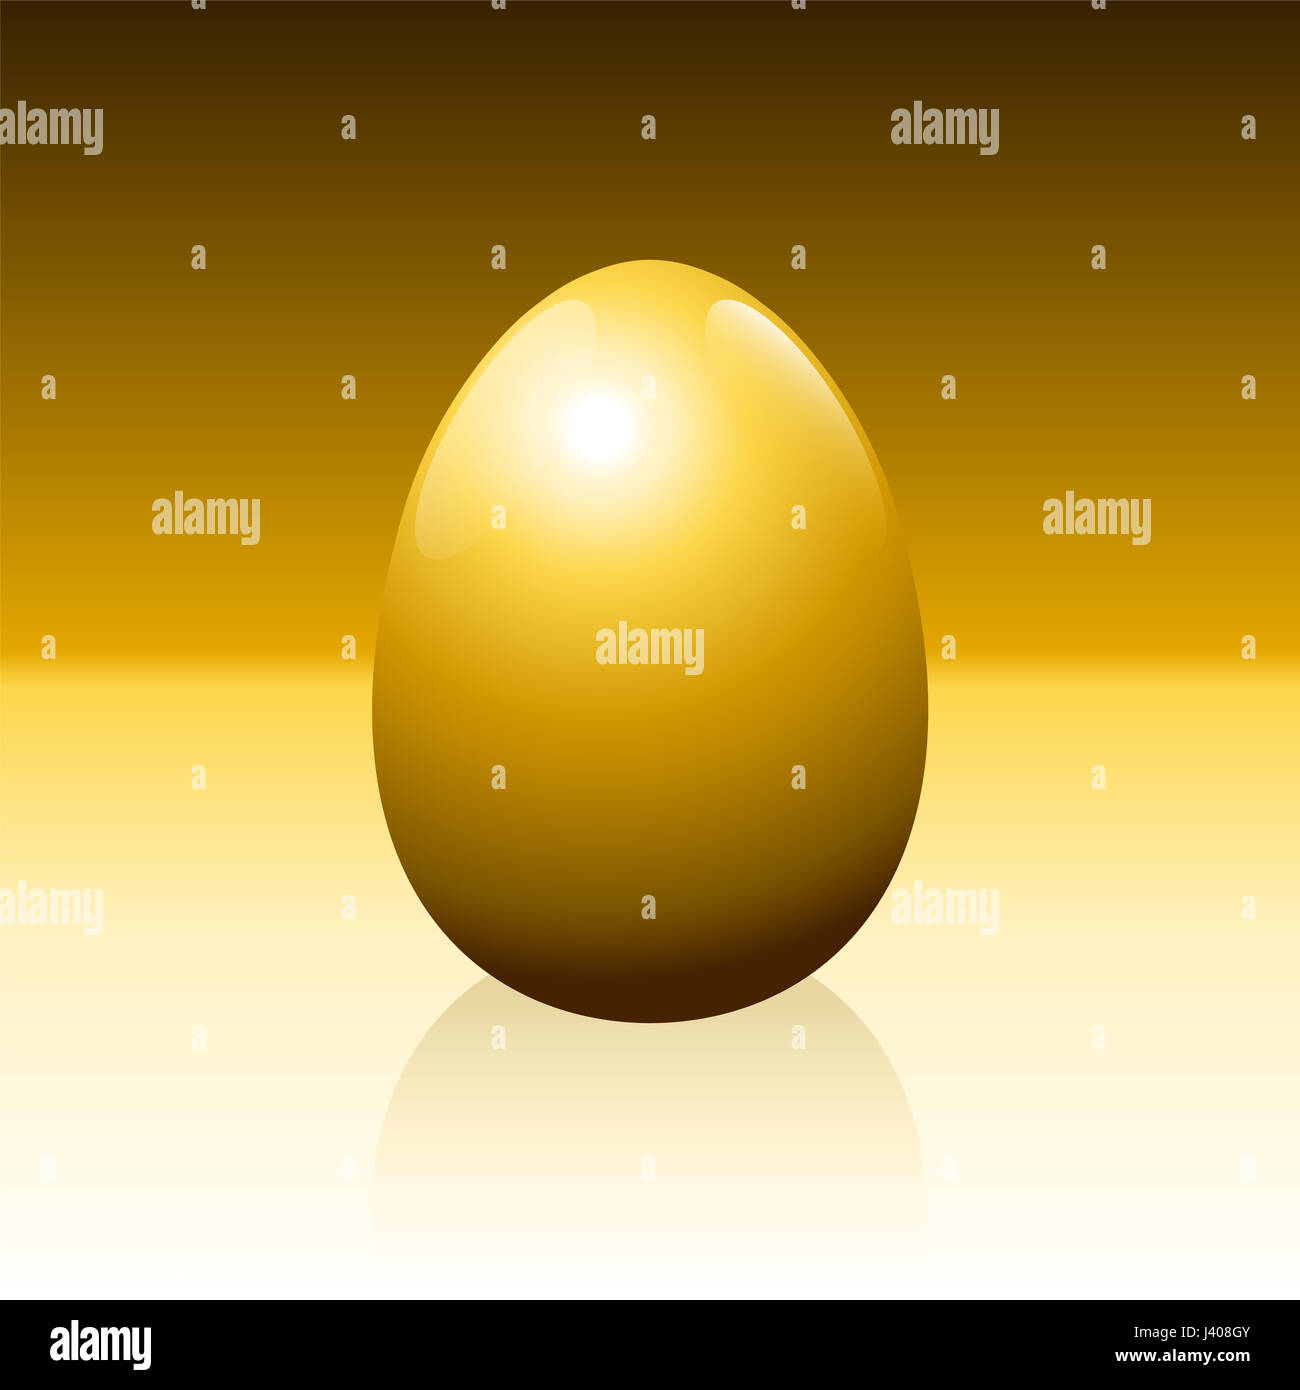 Golden Egg su sfondo dorato - idiom di successo, profitto, ricchezza, finanziarie di fortuna o qualsiasi altra attività lucrativa problemi - illustrazione. Foto Stock